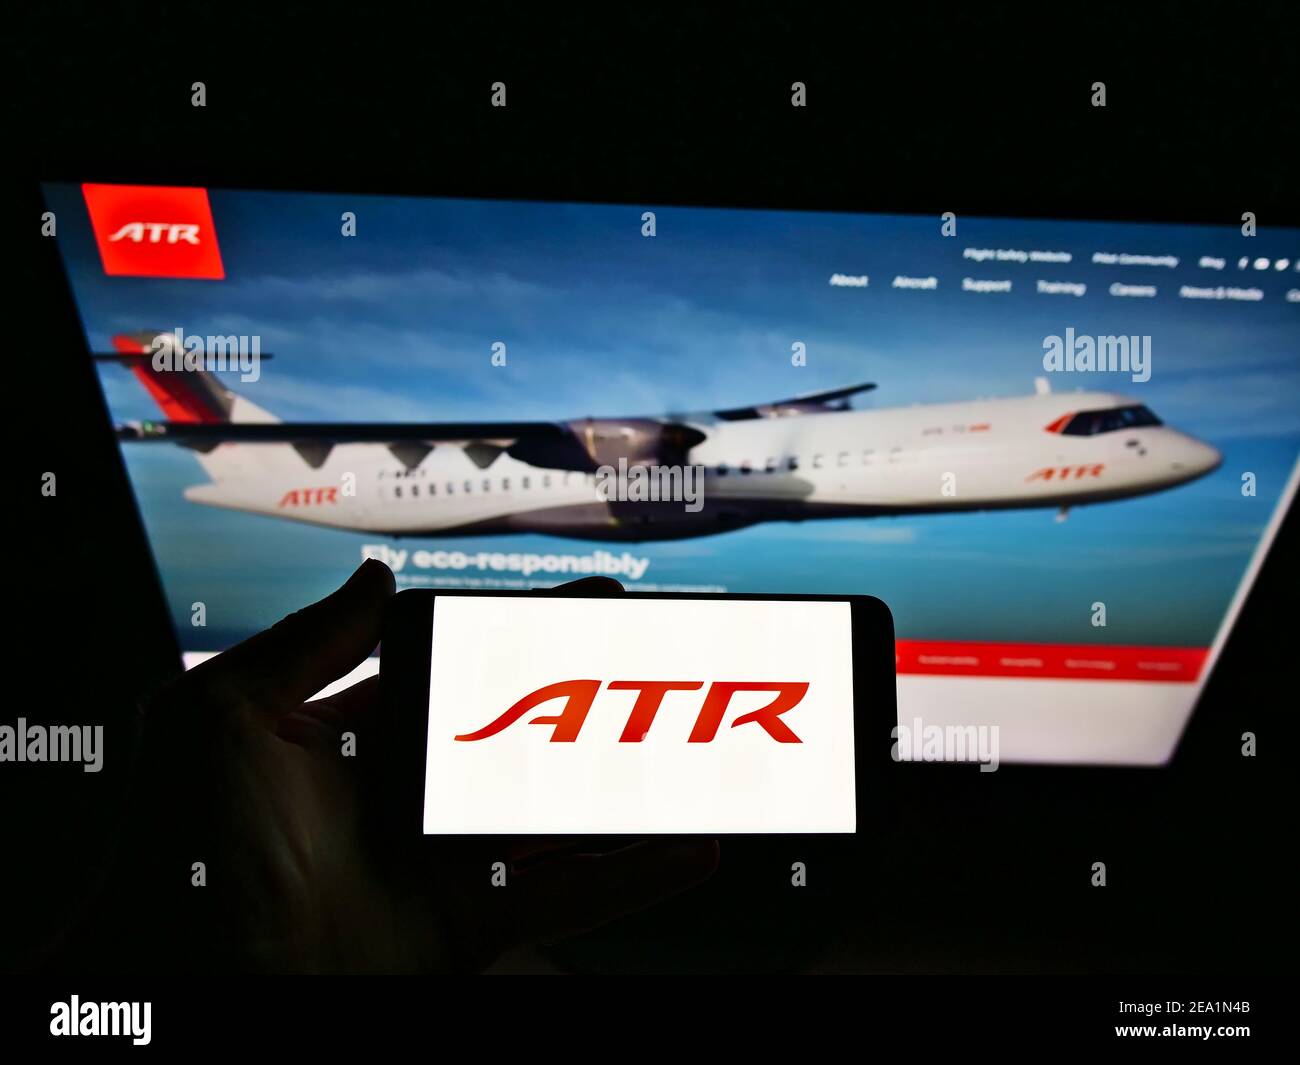 Personne tenant un smartphone avec le logo du fabricant d'avions Avions de transport régional (ATR) sur écran devant le site. Mise au point sur l'affichage du téléphone. Banque D'Images